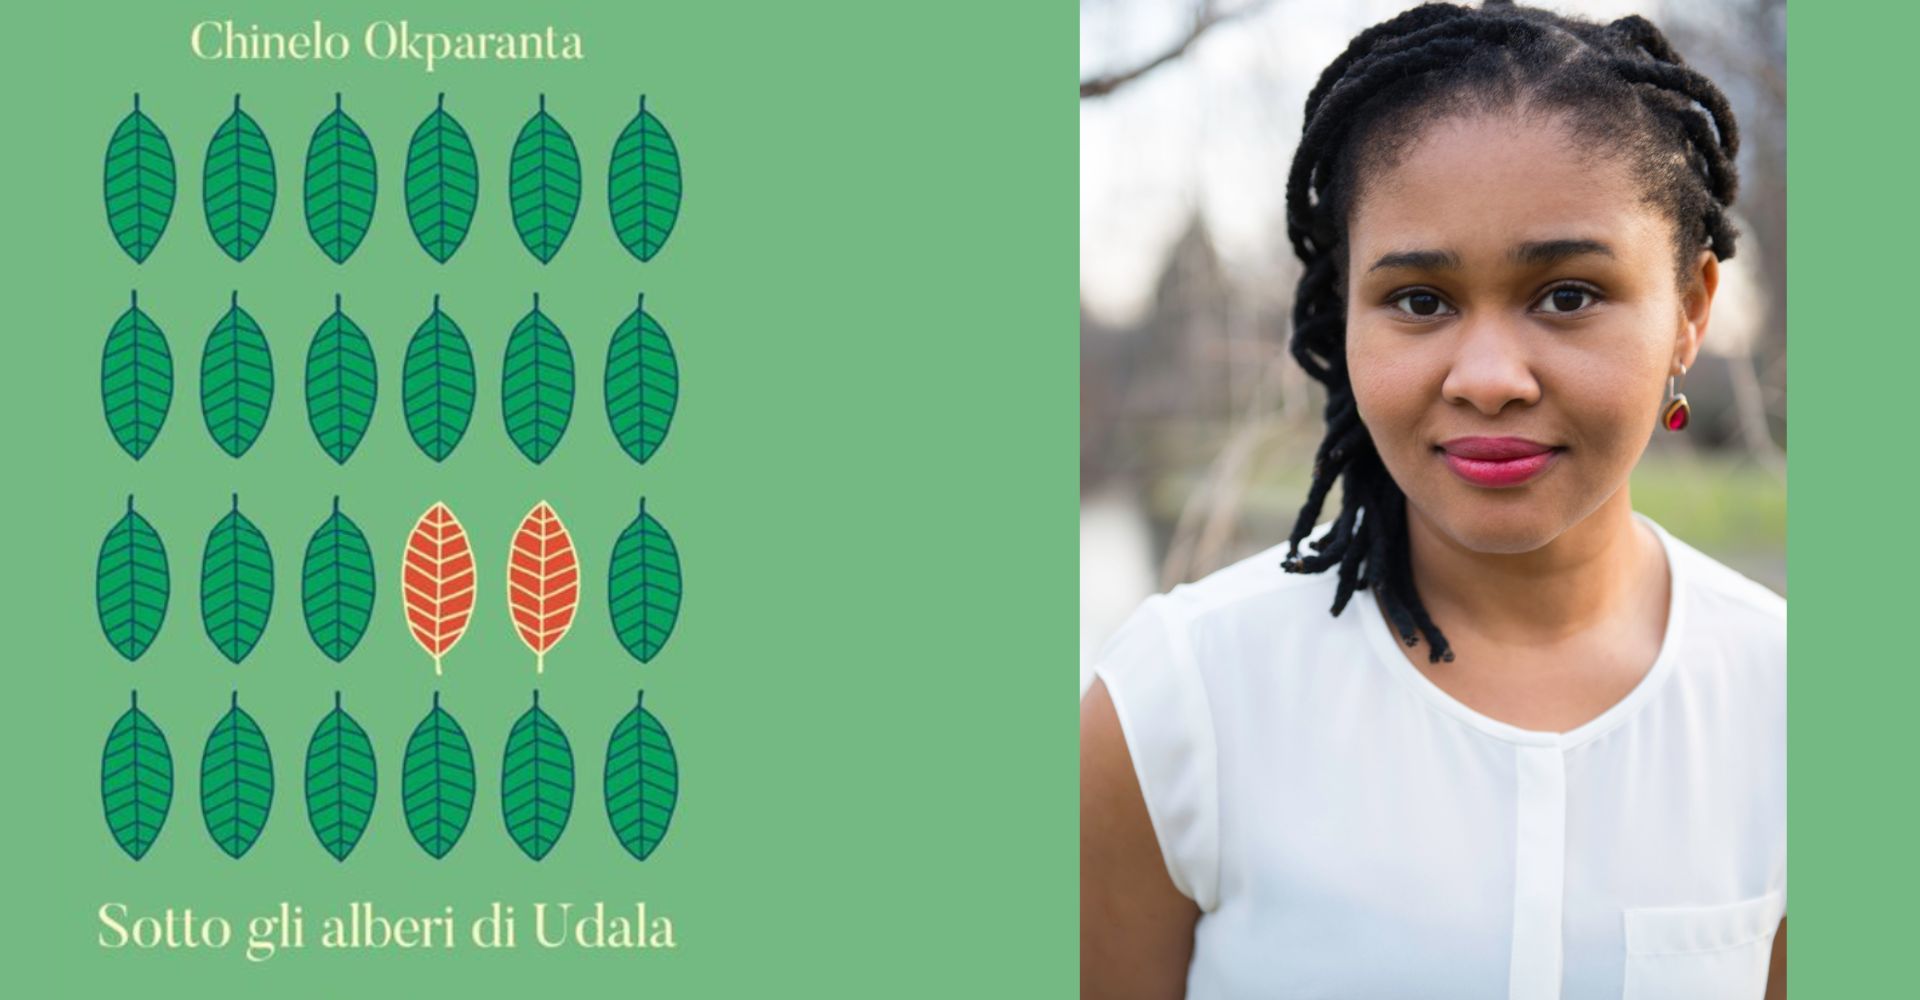 Una guerra civile tra madre e figlia: "Sotto gli alberi di Udala" (in Biafra) con Chinelo Okparanta